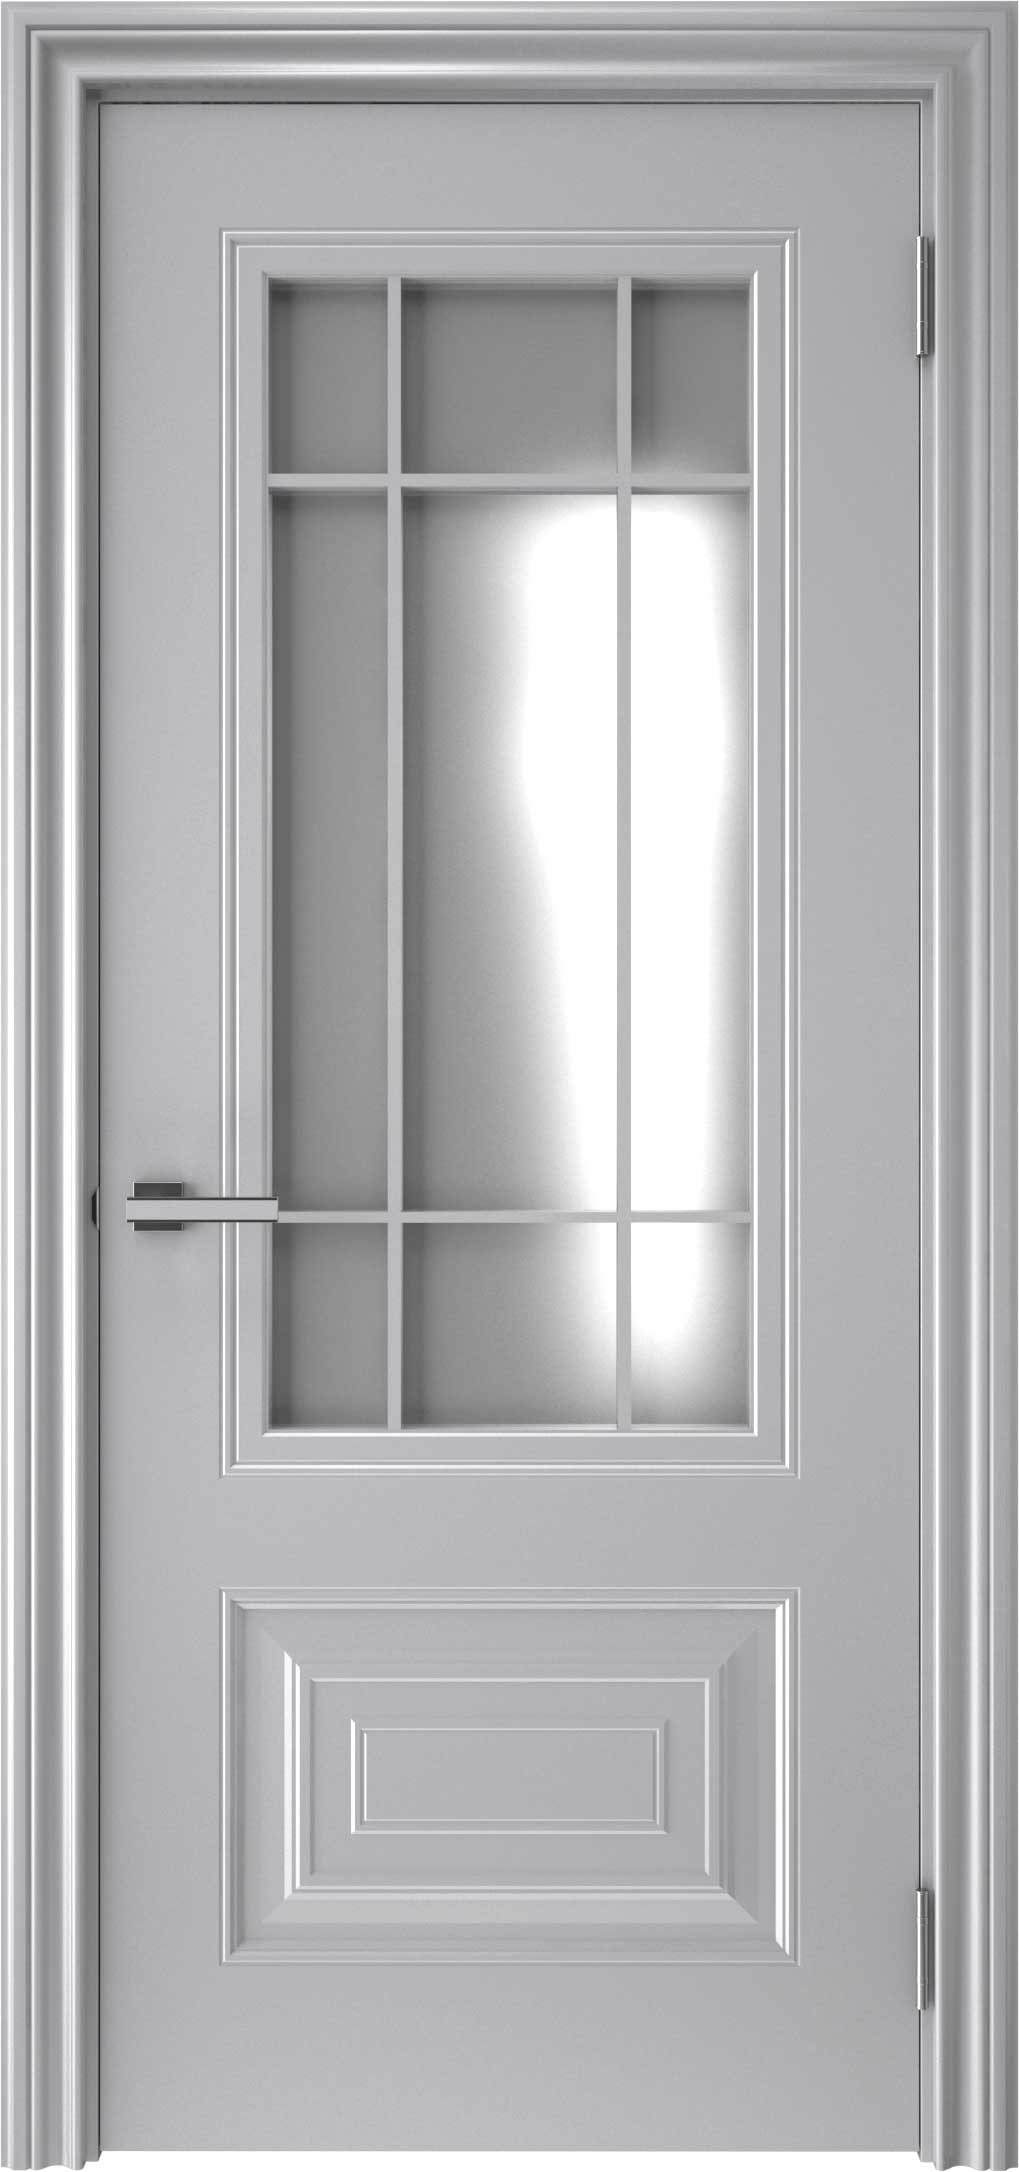 Двери крашеные (Эмаль) ТЕКОНА Смальта-46 со стеклом Серый ral 7036 размер 200 х 60 см. артикул F0000094995